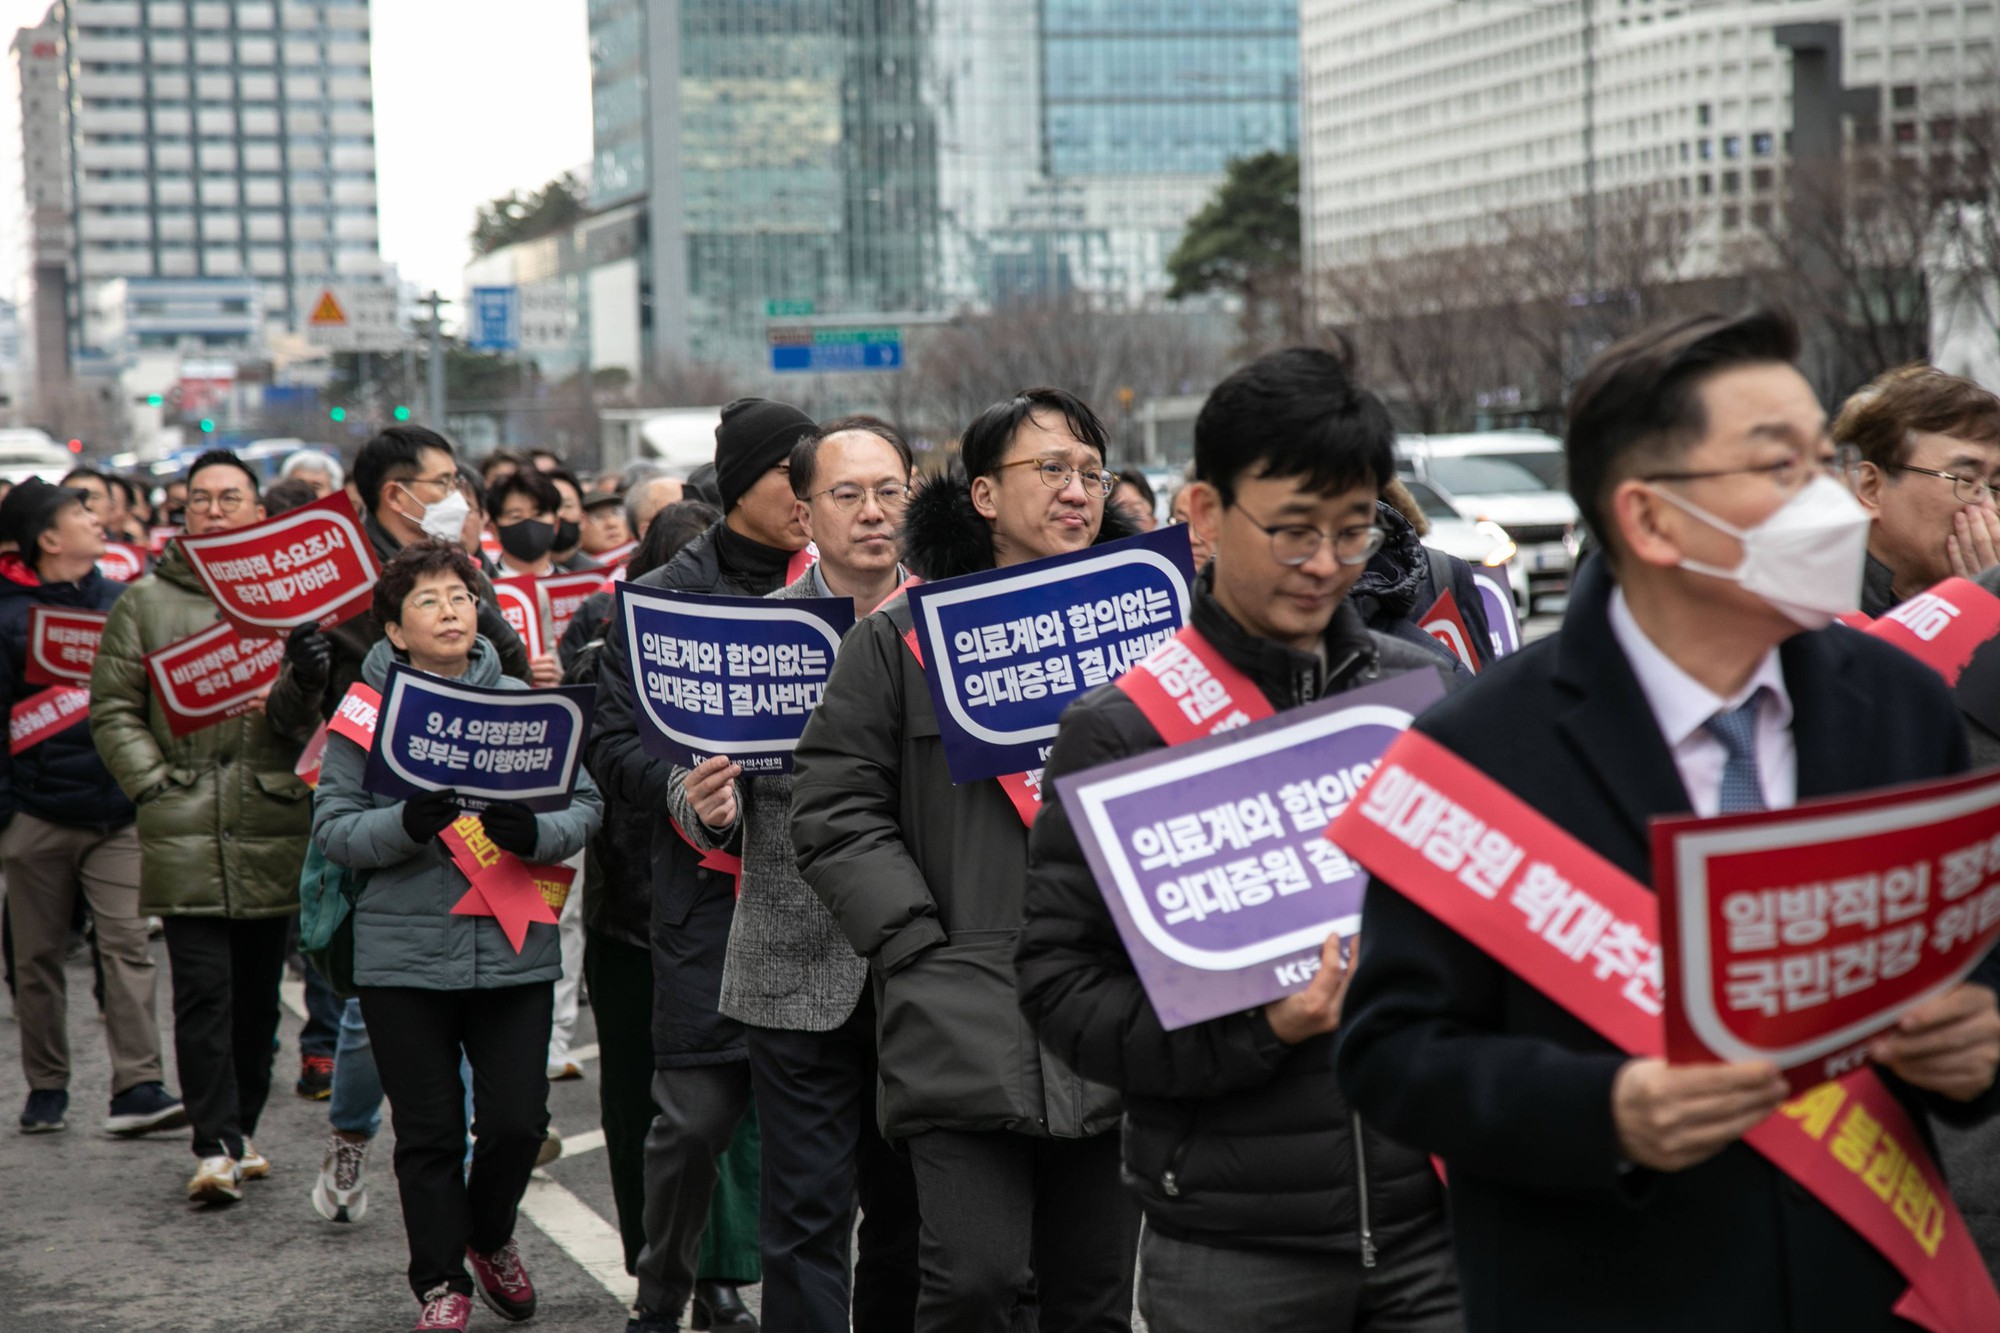 13 ngày khủng hoảng y tế tại Hàn Quốc: Bệnh nhân cấp cứu không ai tiếp nhận, người ở lại kiệt sức đến cùng cực- Ảnh 4.